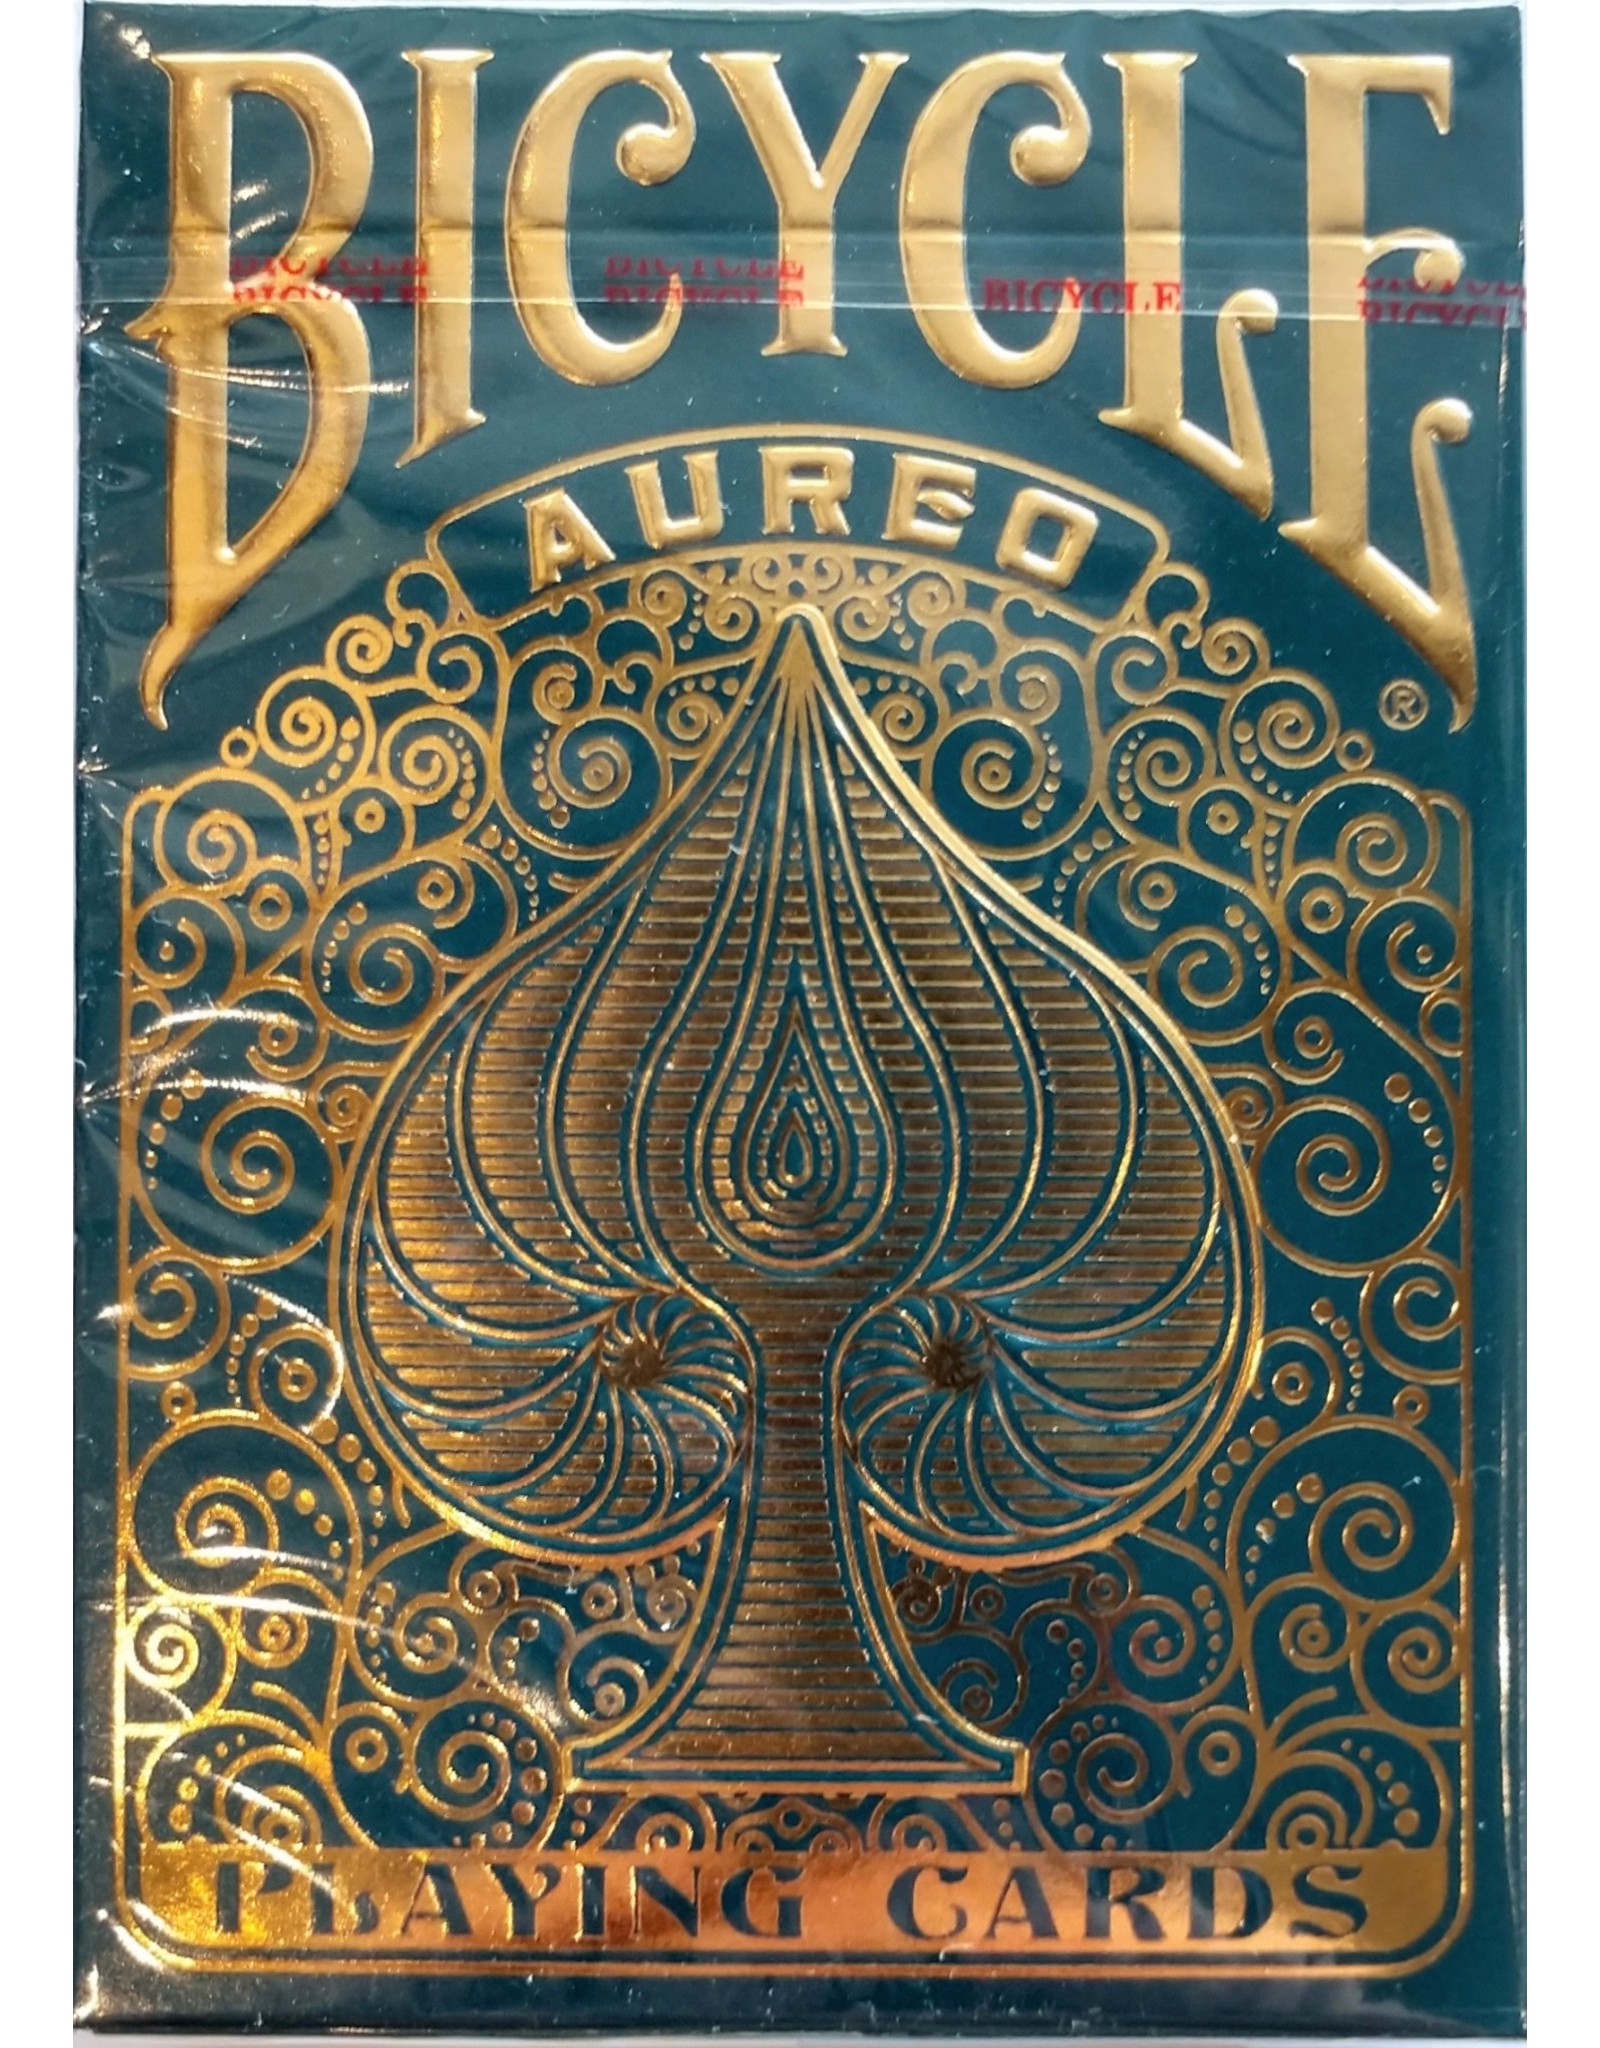 bicycle cards aureo